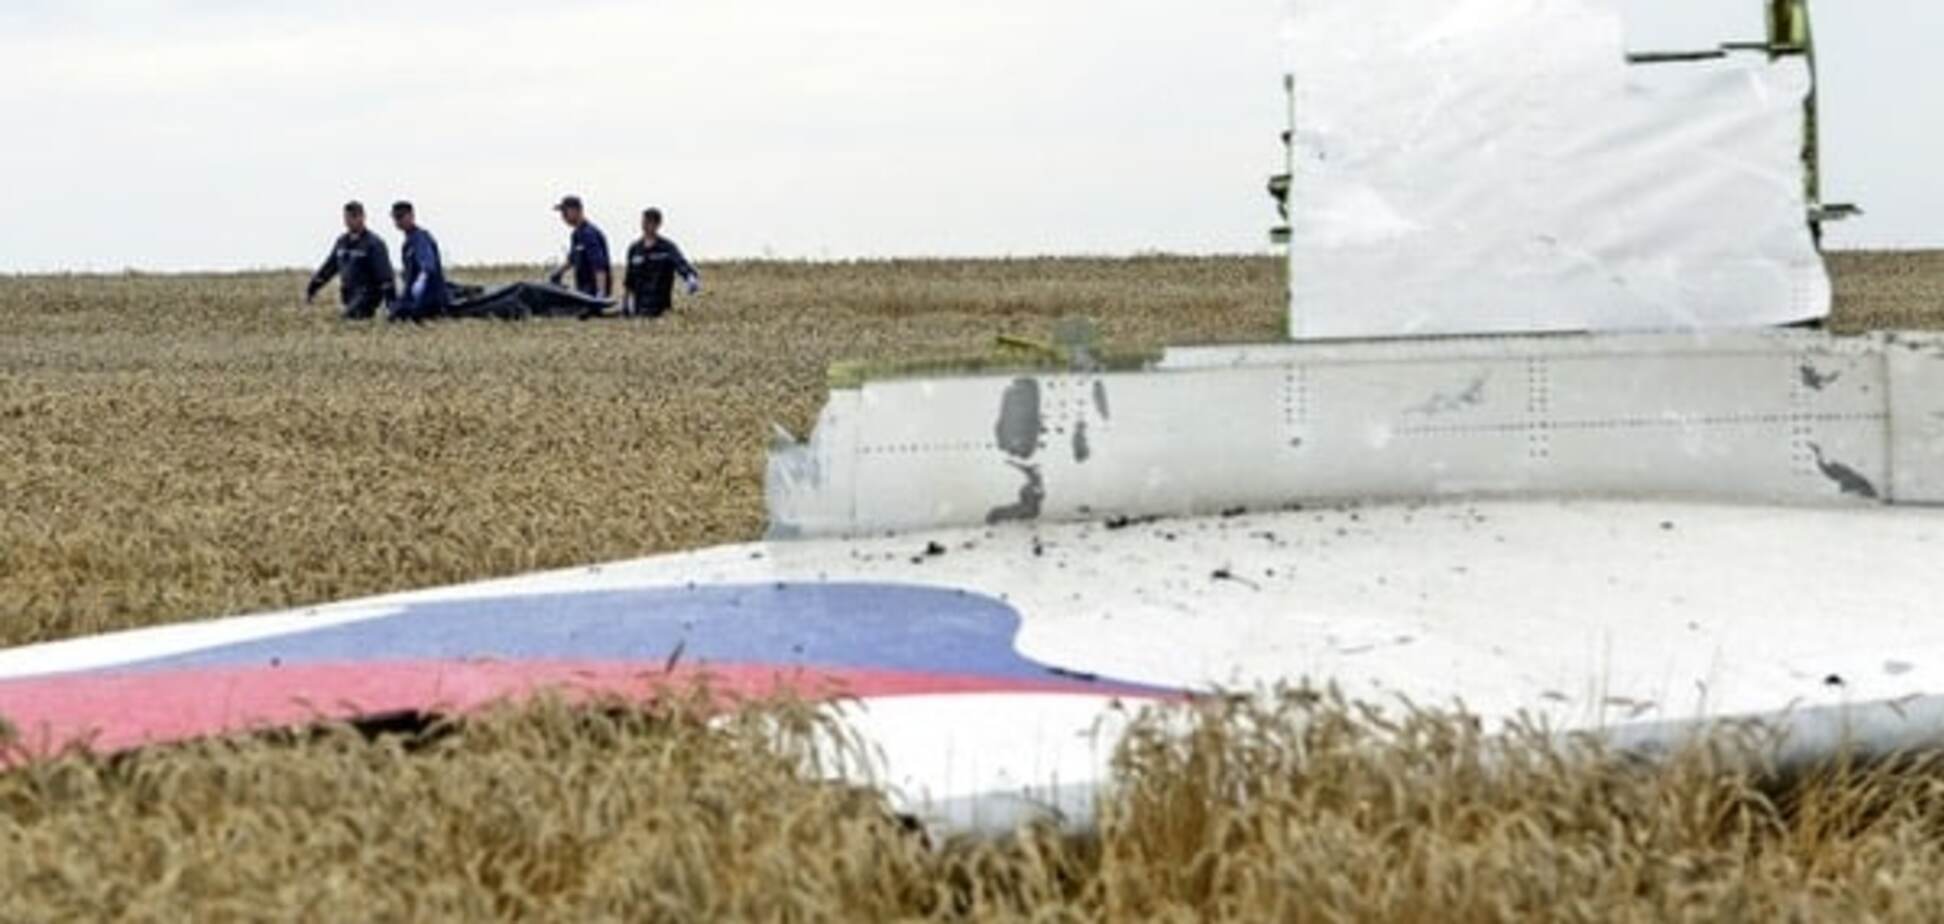 Автор доклада по MH17 рассказал, за что сбили 'Боинг' на Донбассе